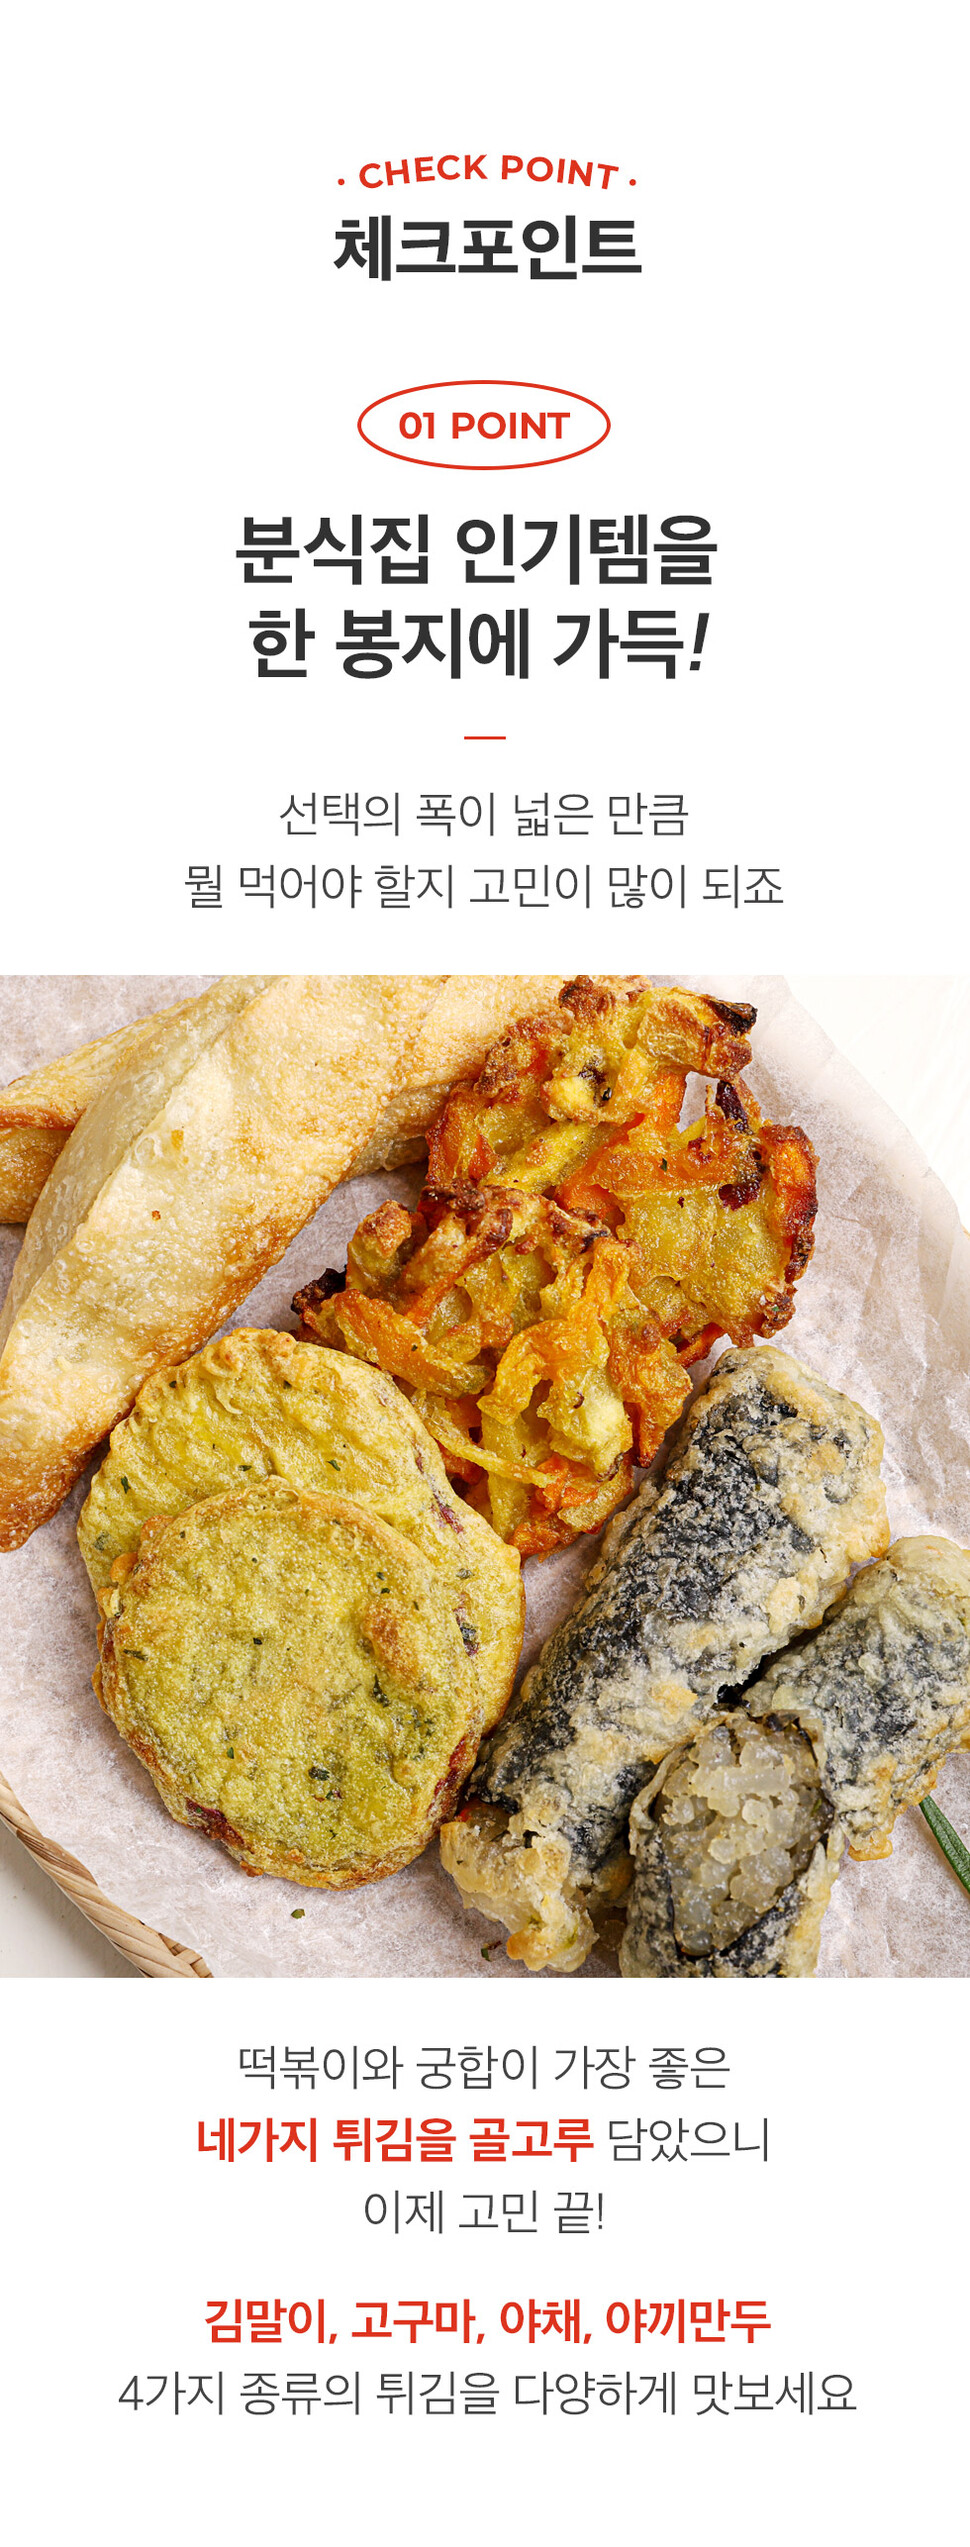 韓國食品-[Seoggwandong] 雜錦炸物 220g